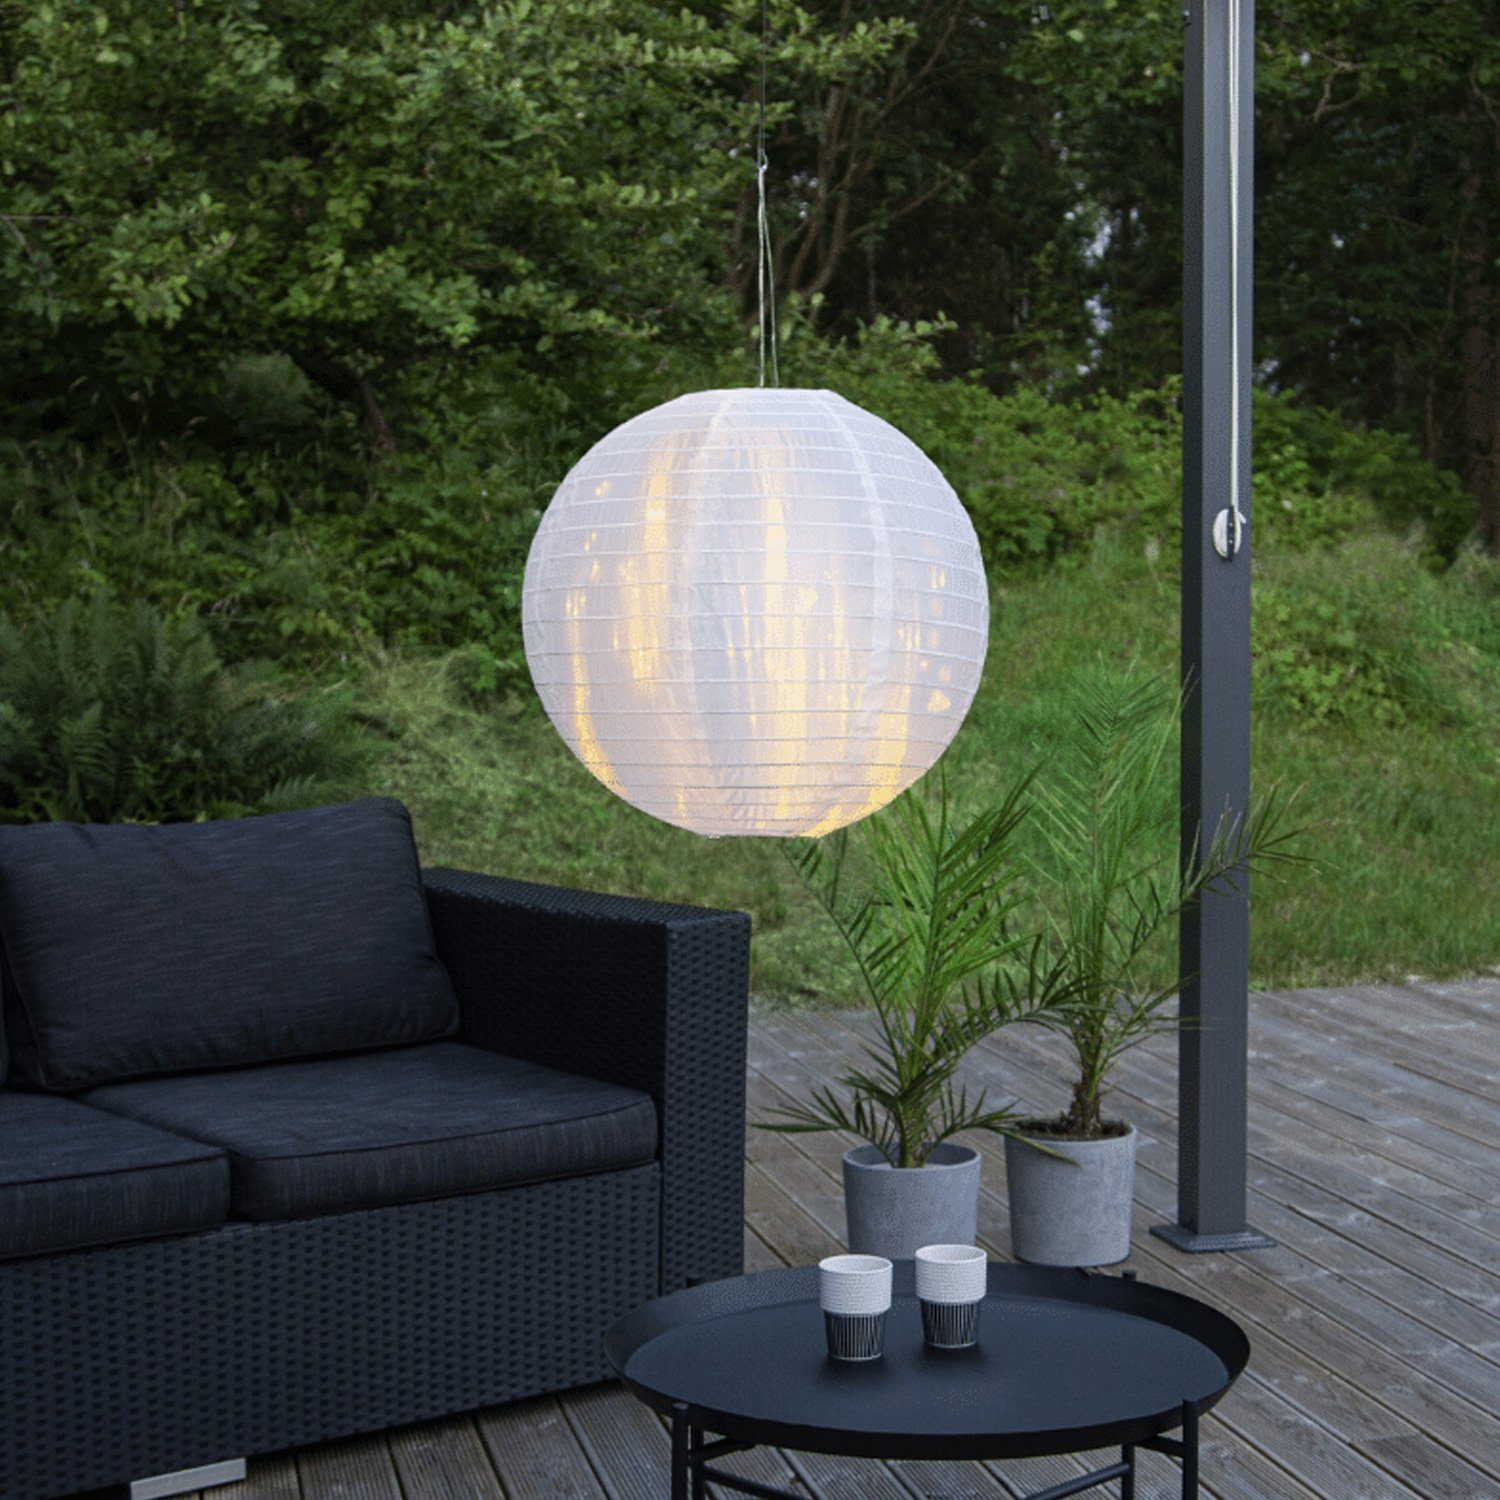 STAR TRADING LED Lampion Lampion Лампиschirm rund D: 40cm weiß für Hängefassungen für Außen